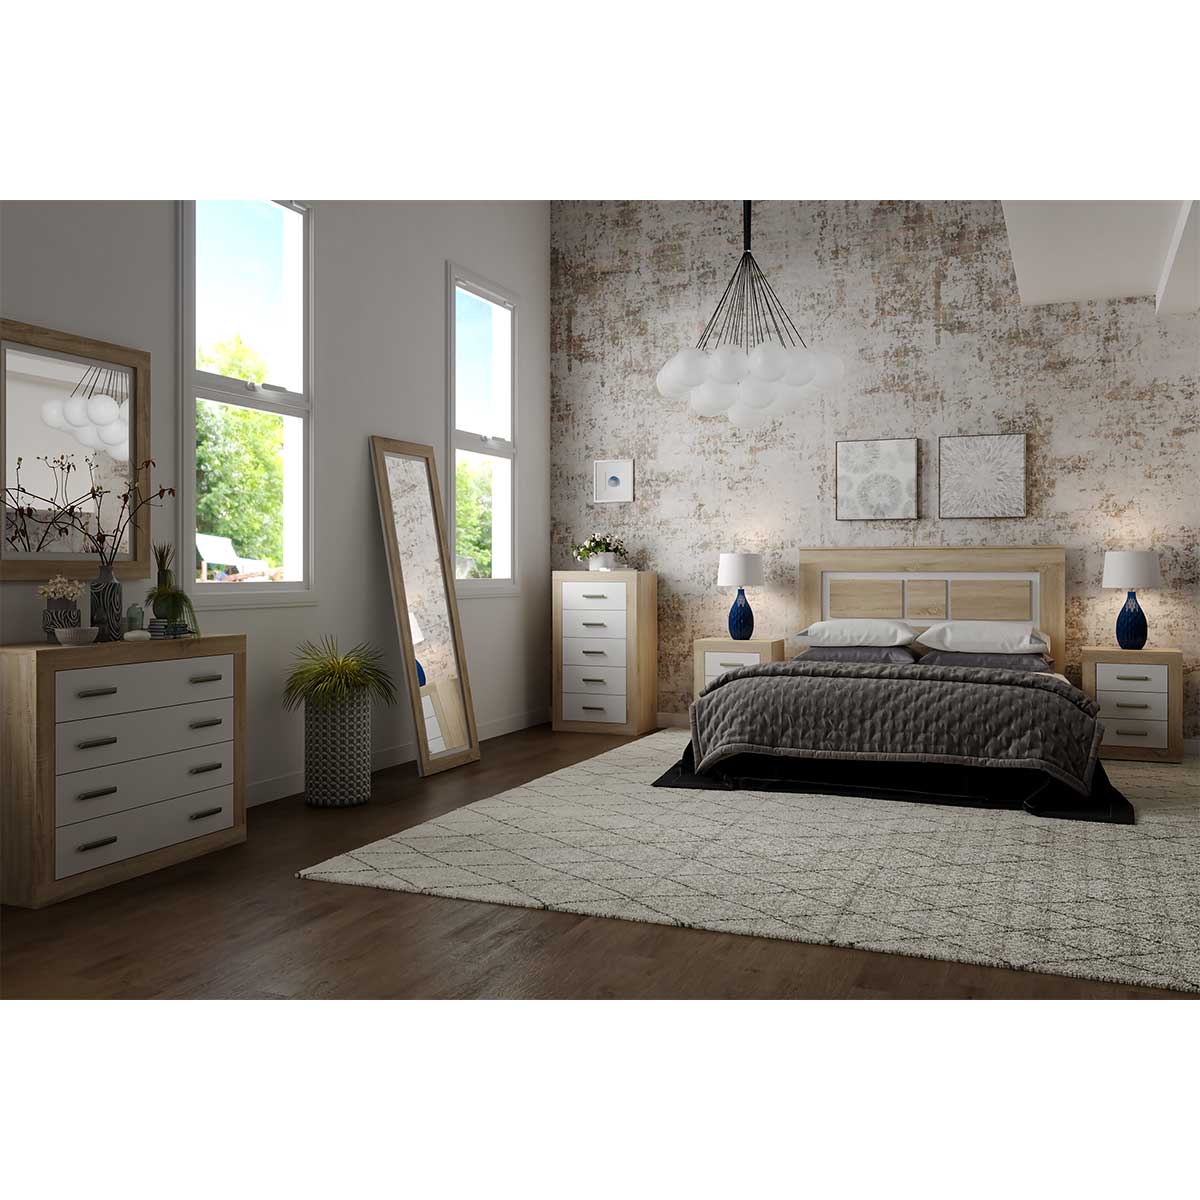 Conjunto de dormitorio moderno: cabecero, 2 mesitas, cómoda, espejo - Lara  01 - Don Baraton: tienda de sofás, colchones y muebles